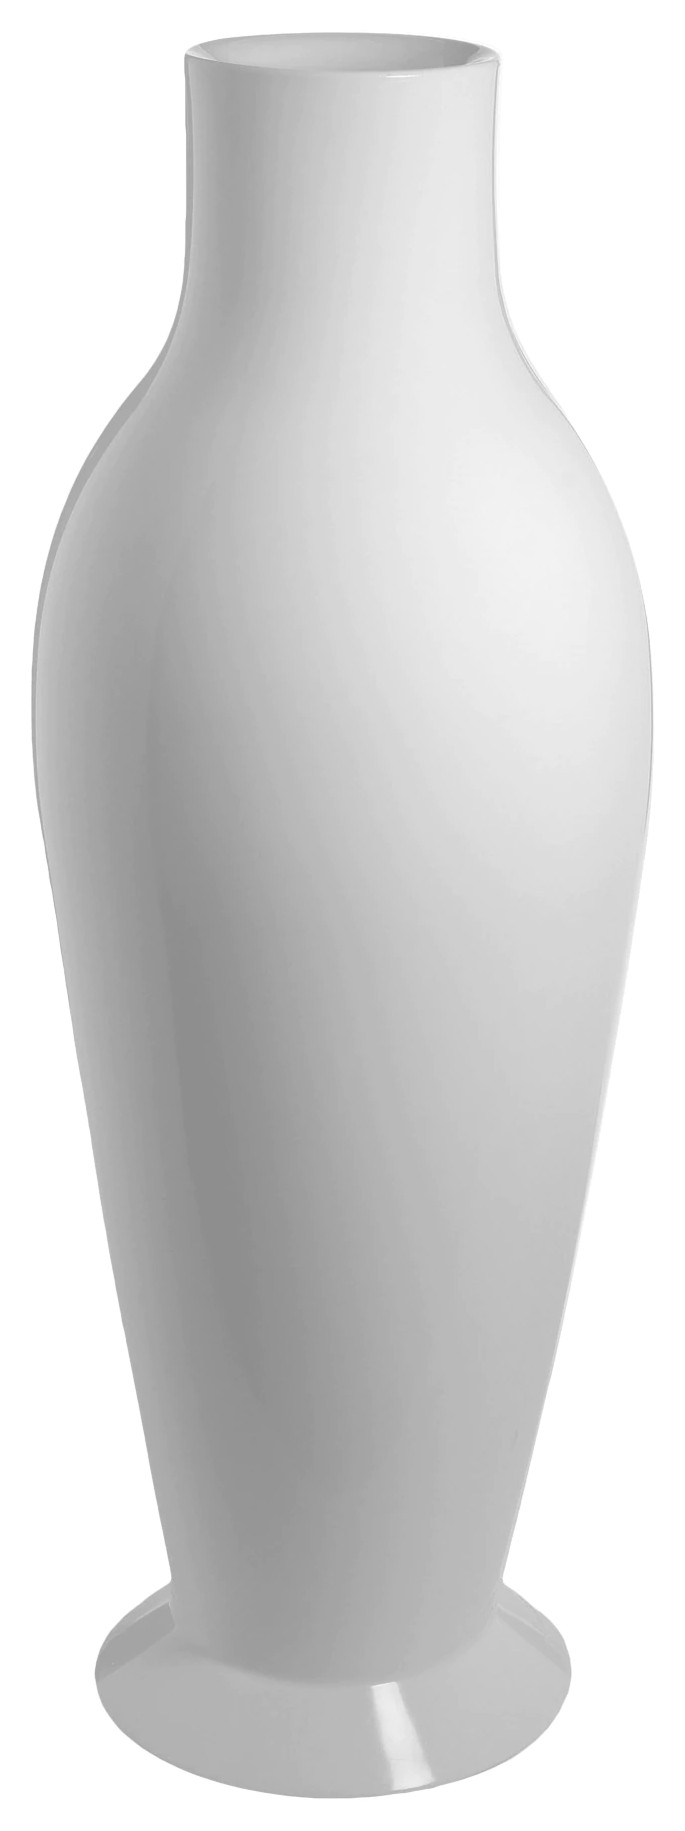 Vaza Kartell Misses Flower Power design Philippe Stark & Eugeni Quitllet h164cm alb lucios Kartell pret redus